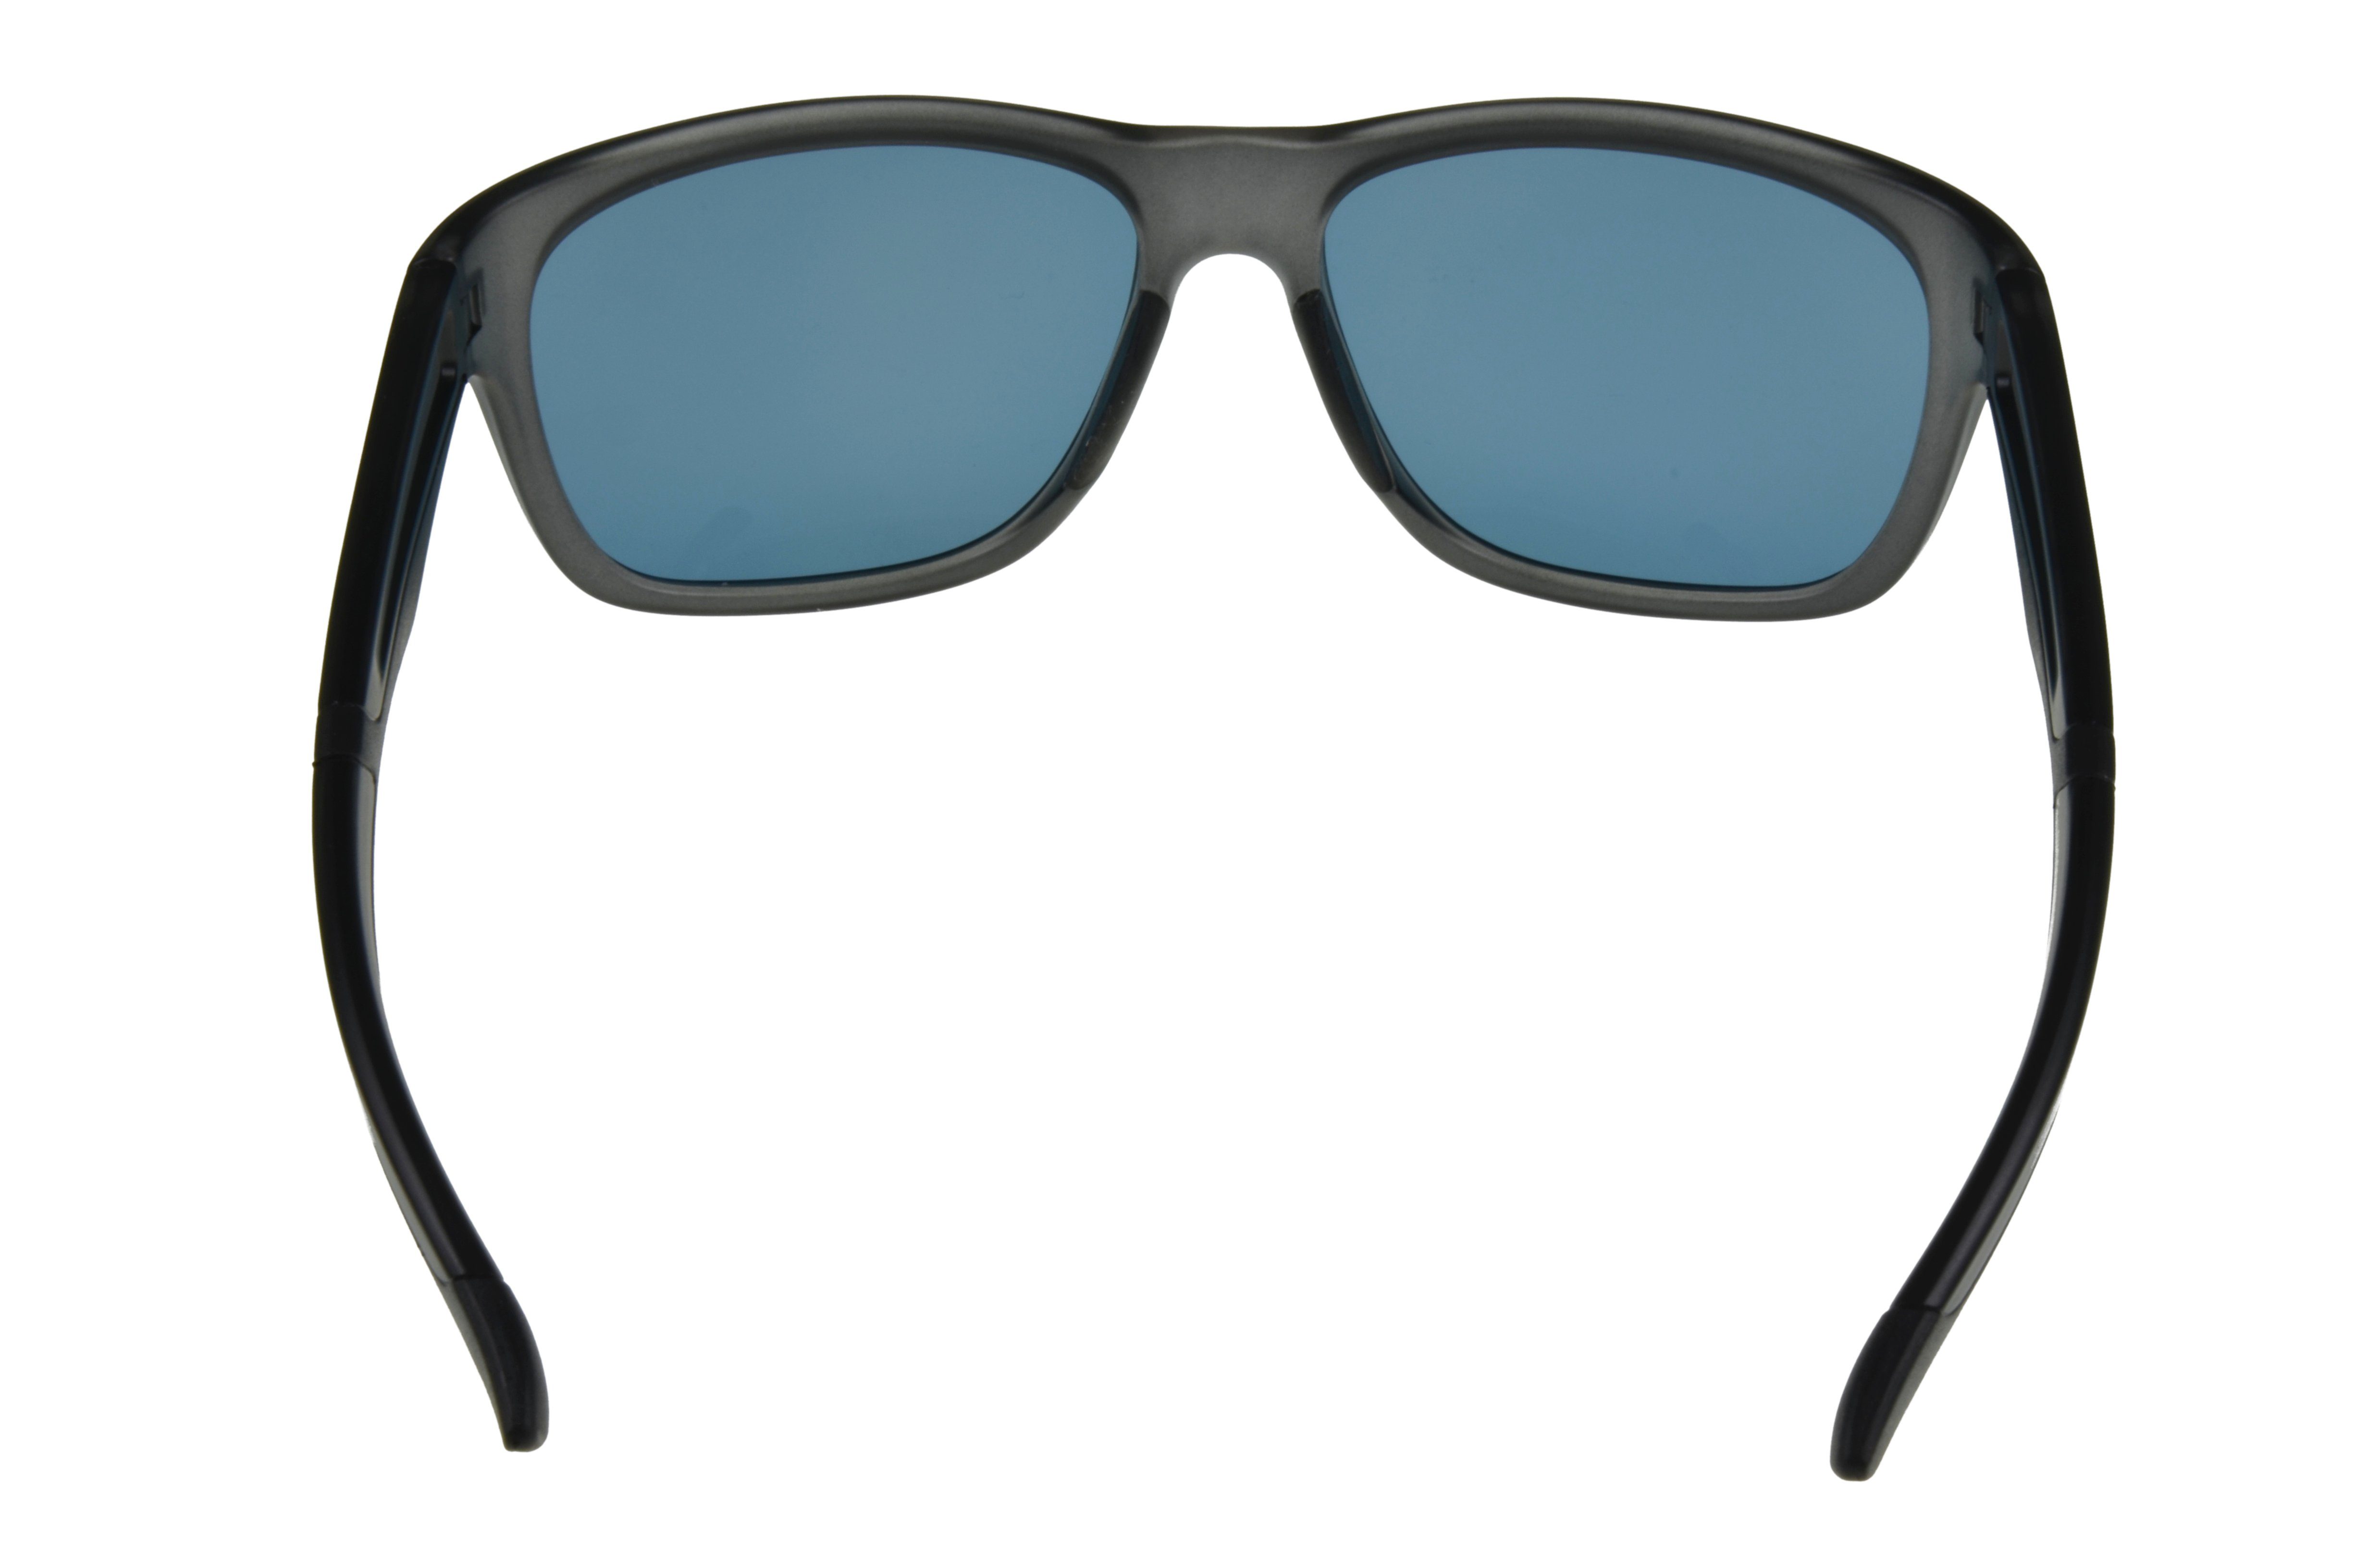 blau/grau WM4934 grau-transparent -transparent TR90 schwarz-grün, Komfortbügel, Brille Damen Herren TR90 Gamswild Sonnenbrille grün, GAMSSTYLE Mode Unisex